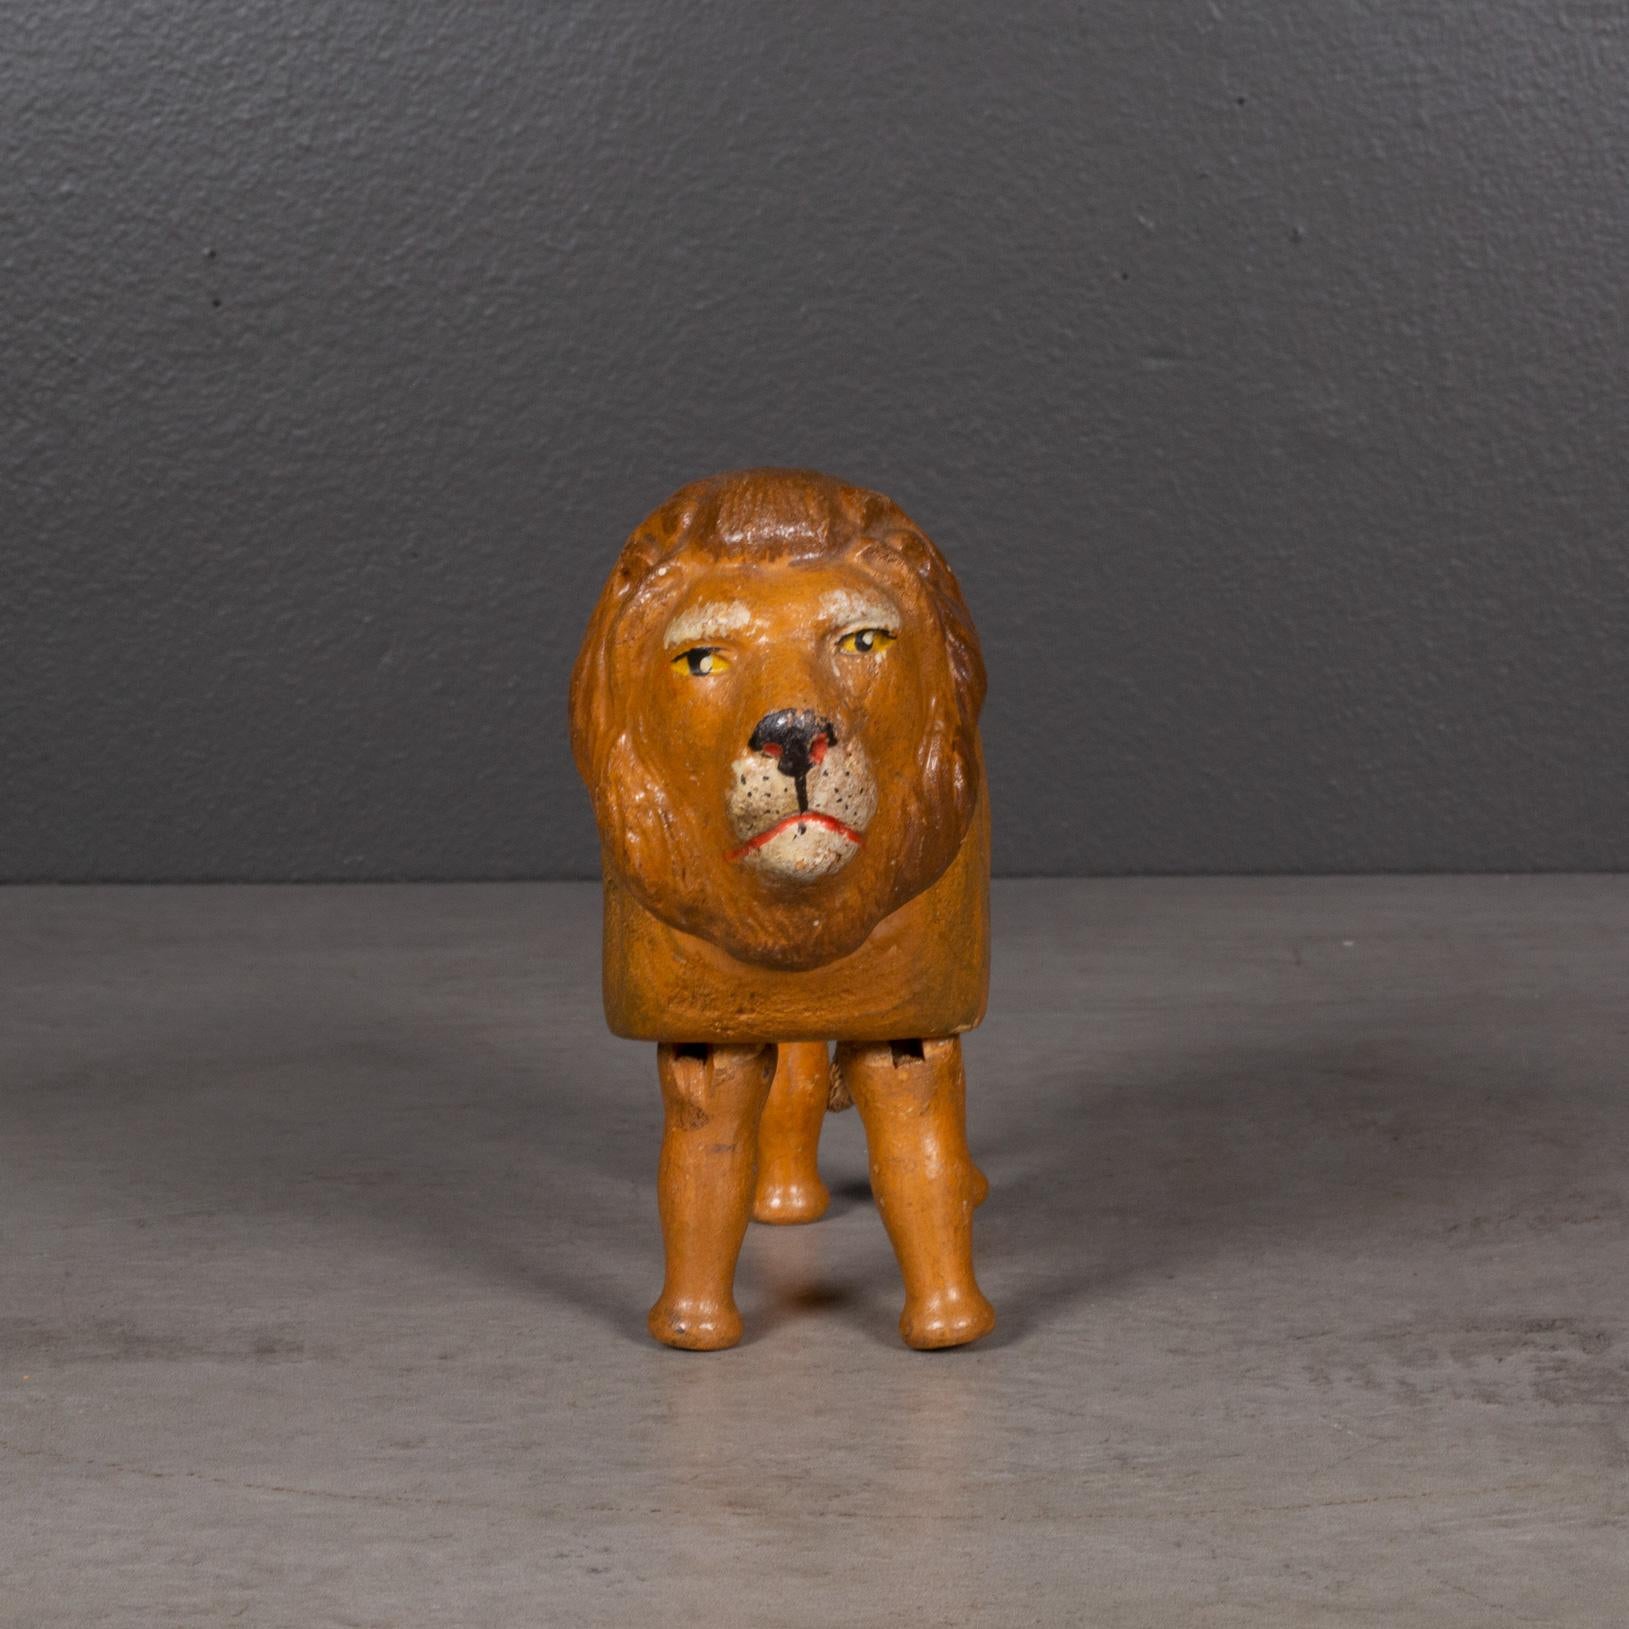 À PROPOS DE

Lion en bois articulé fabriqué dans les années 1900 par la Schoenhut Piano Company dans le cadre de la collection 